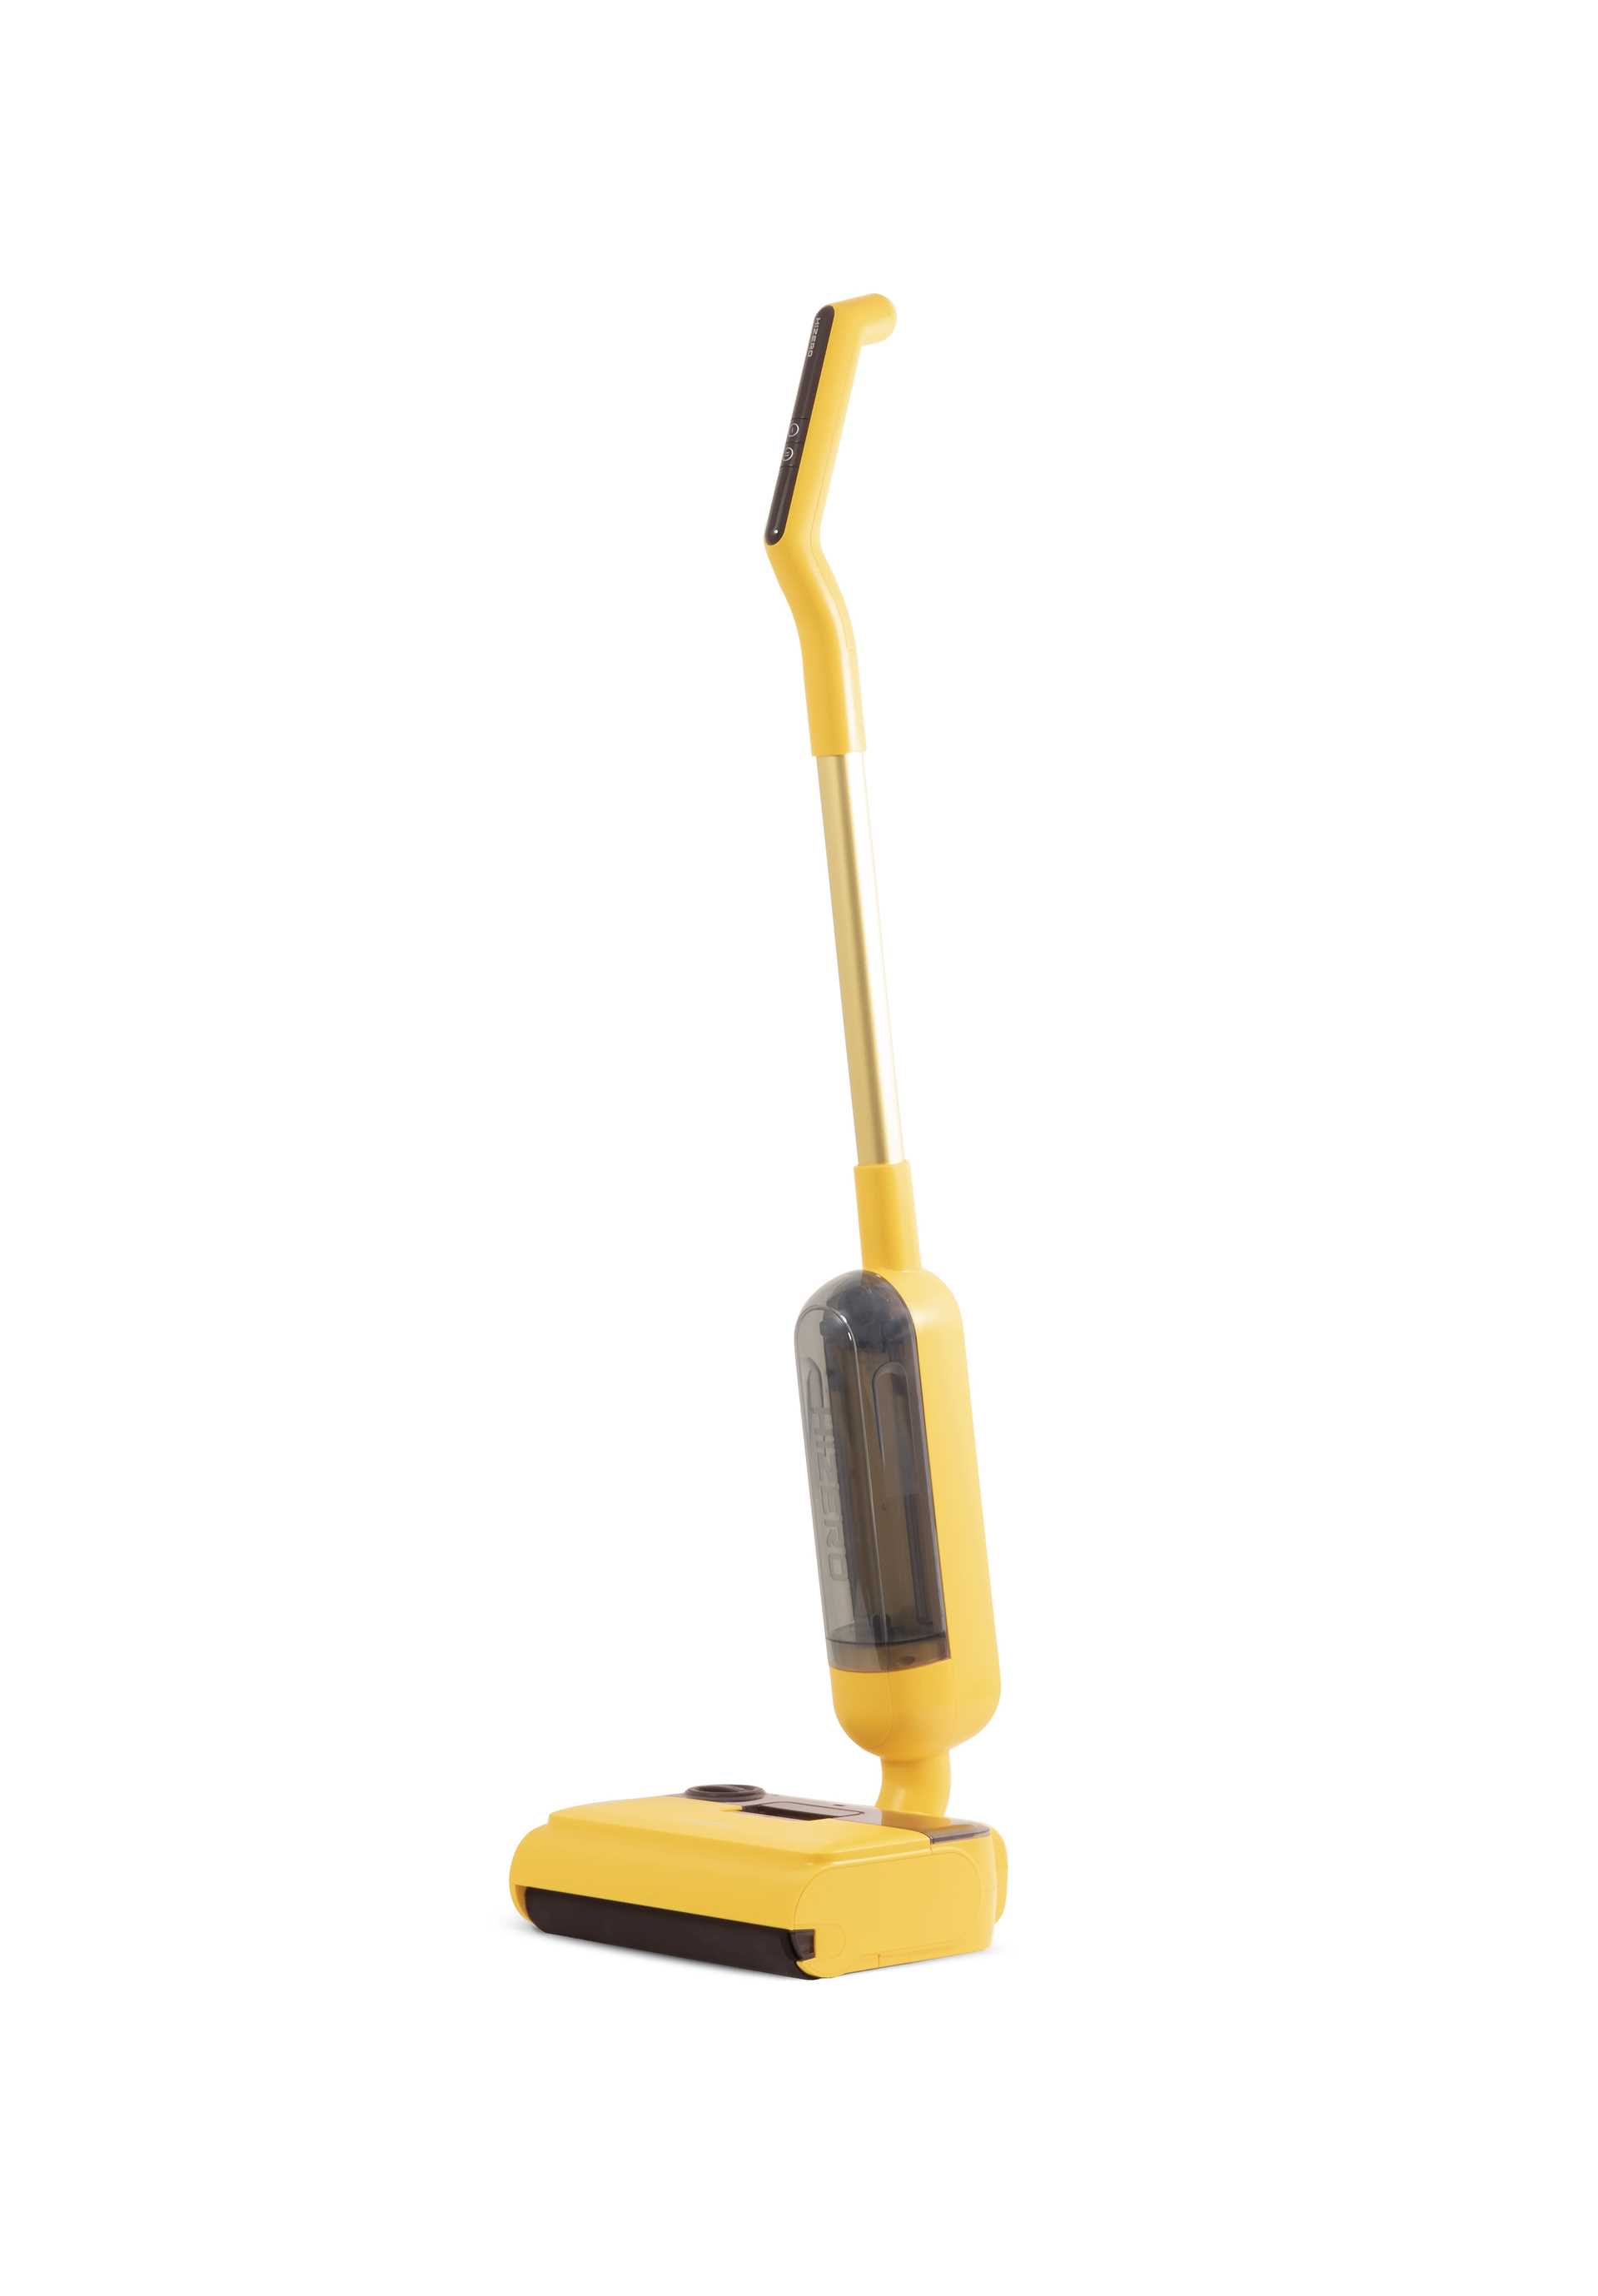 מנקה רצפות שוטף Hizero דגם F100 Bionic צהוב - תמונה 2